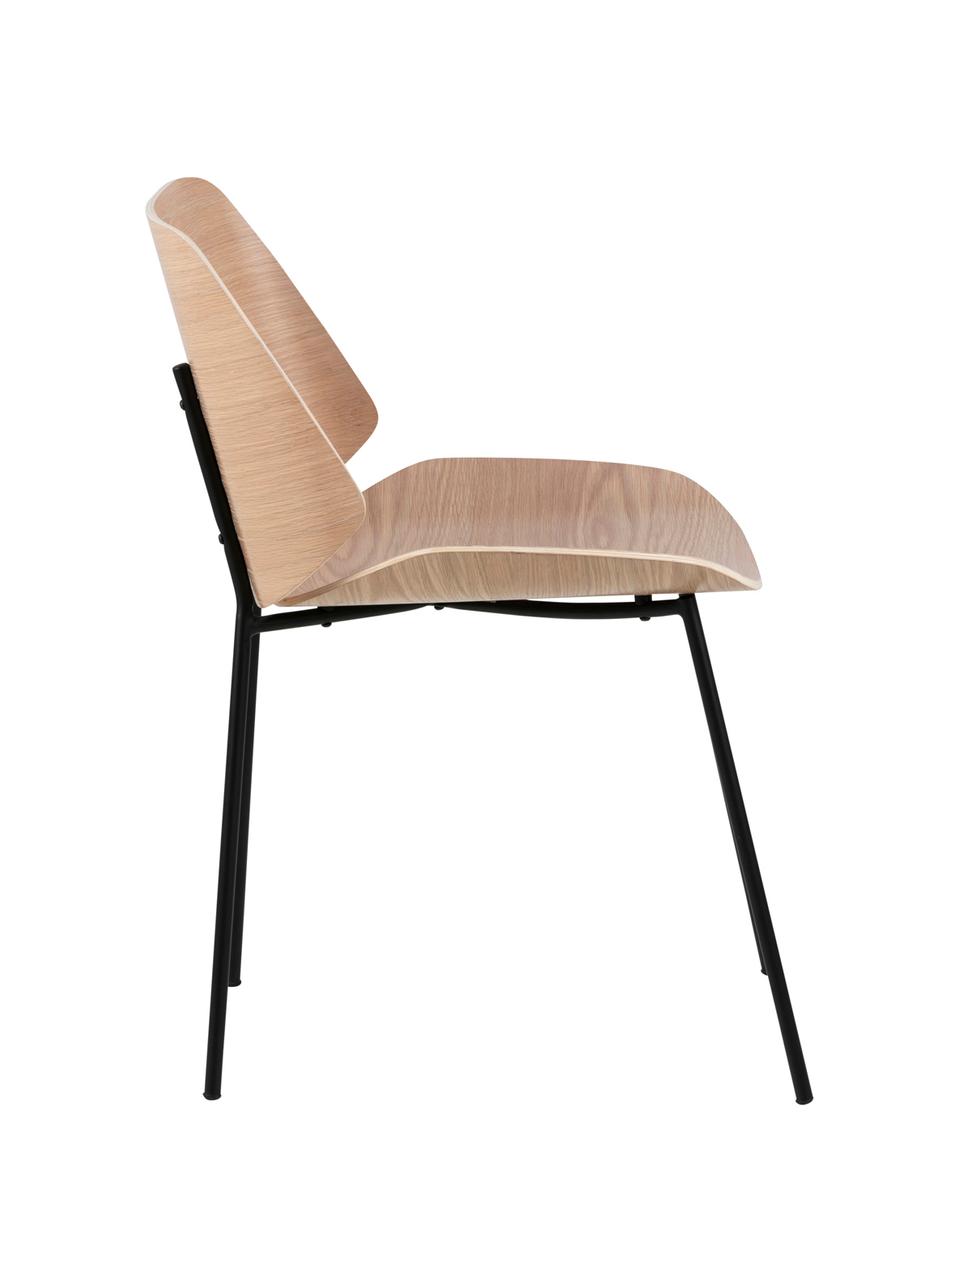 Holzstühle Aks, 2 Stück, Sitzfläche: Eichenholzfurnier, lackie, Beine: Metall, pulverbeschichtet, Eiche, B 59 x T 47 cm